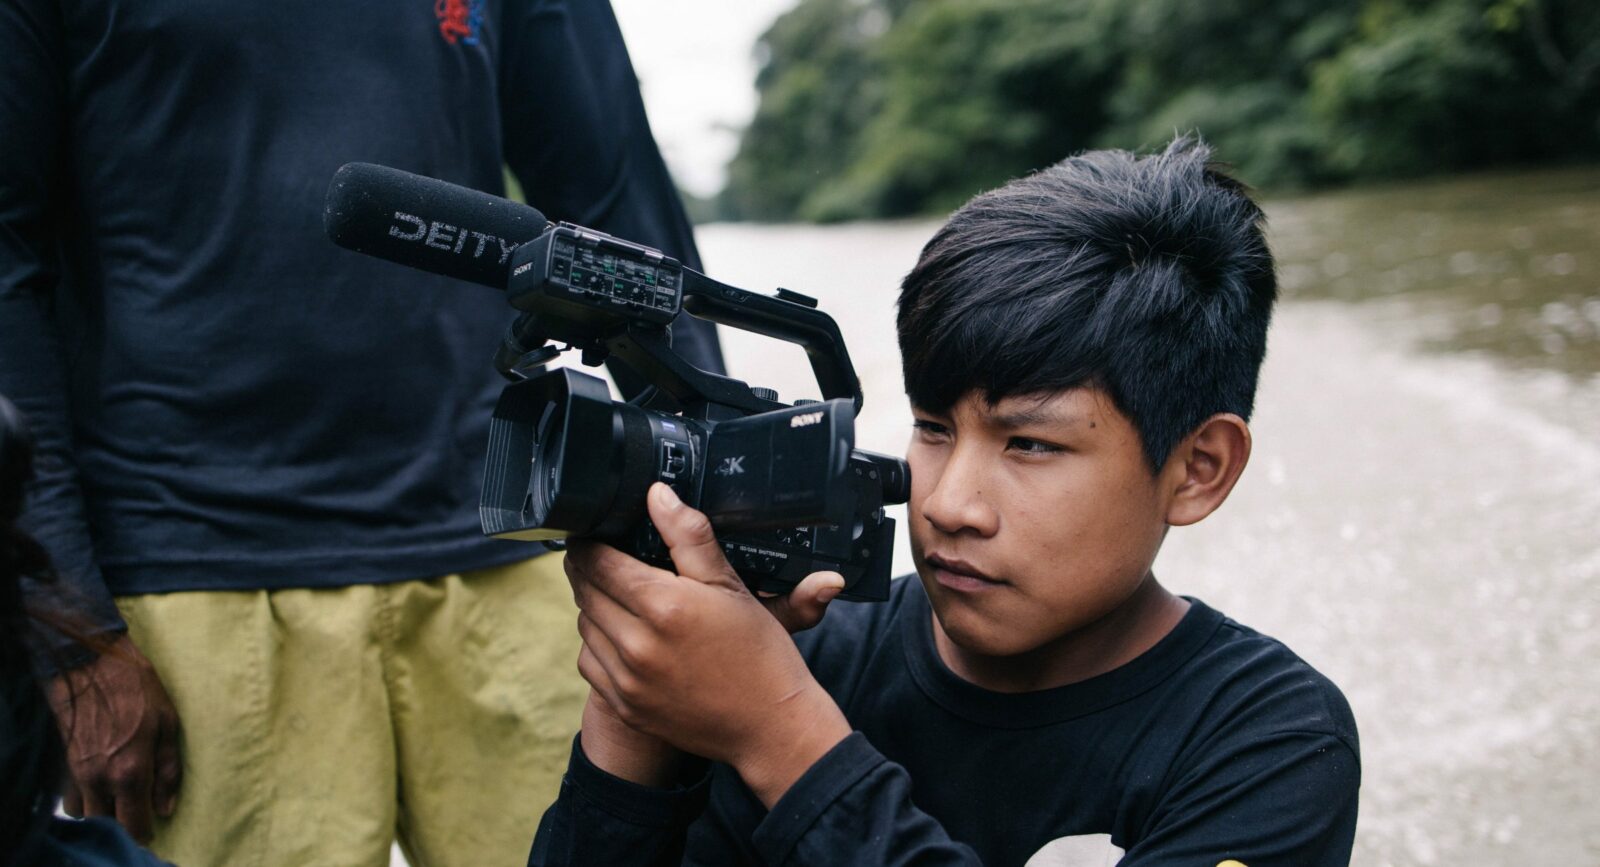 Young wru-eu-uau-uau boy taking footage on a digital camera.